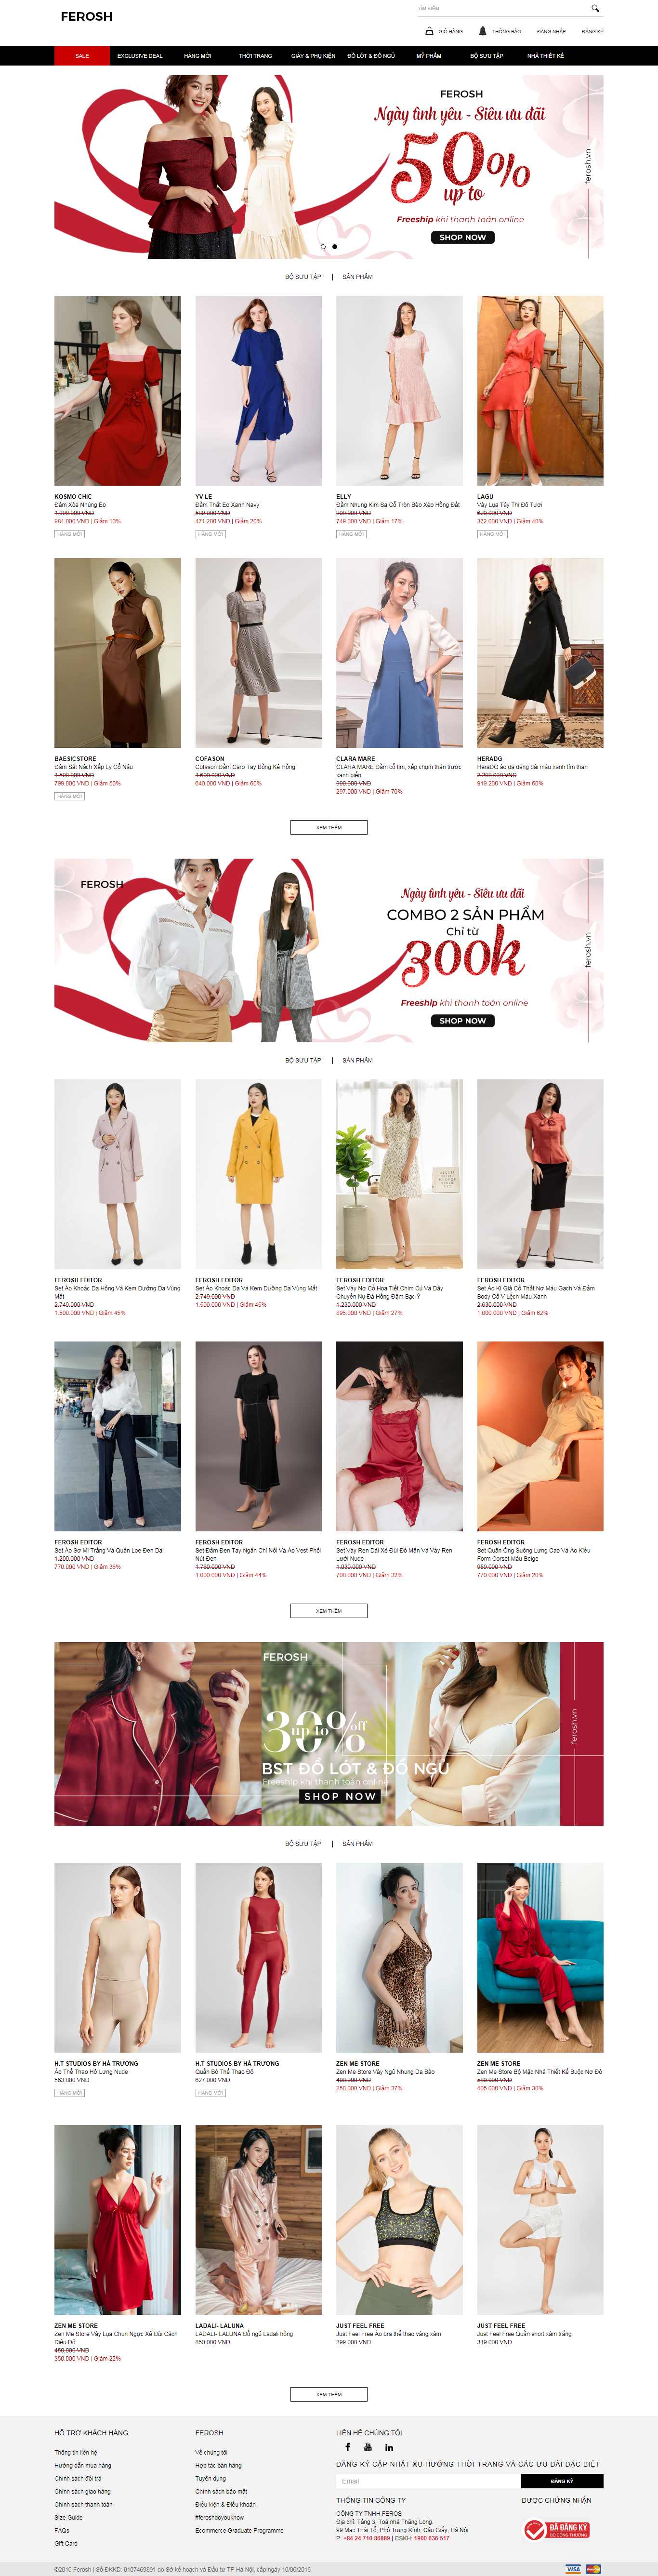 Thiết kế Website shop thời trang - ferosh.vn